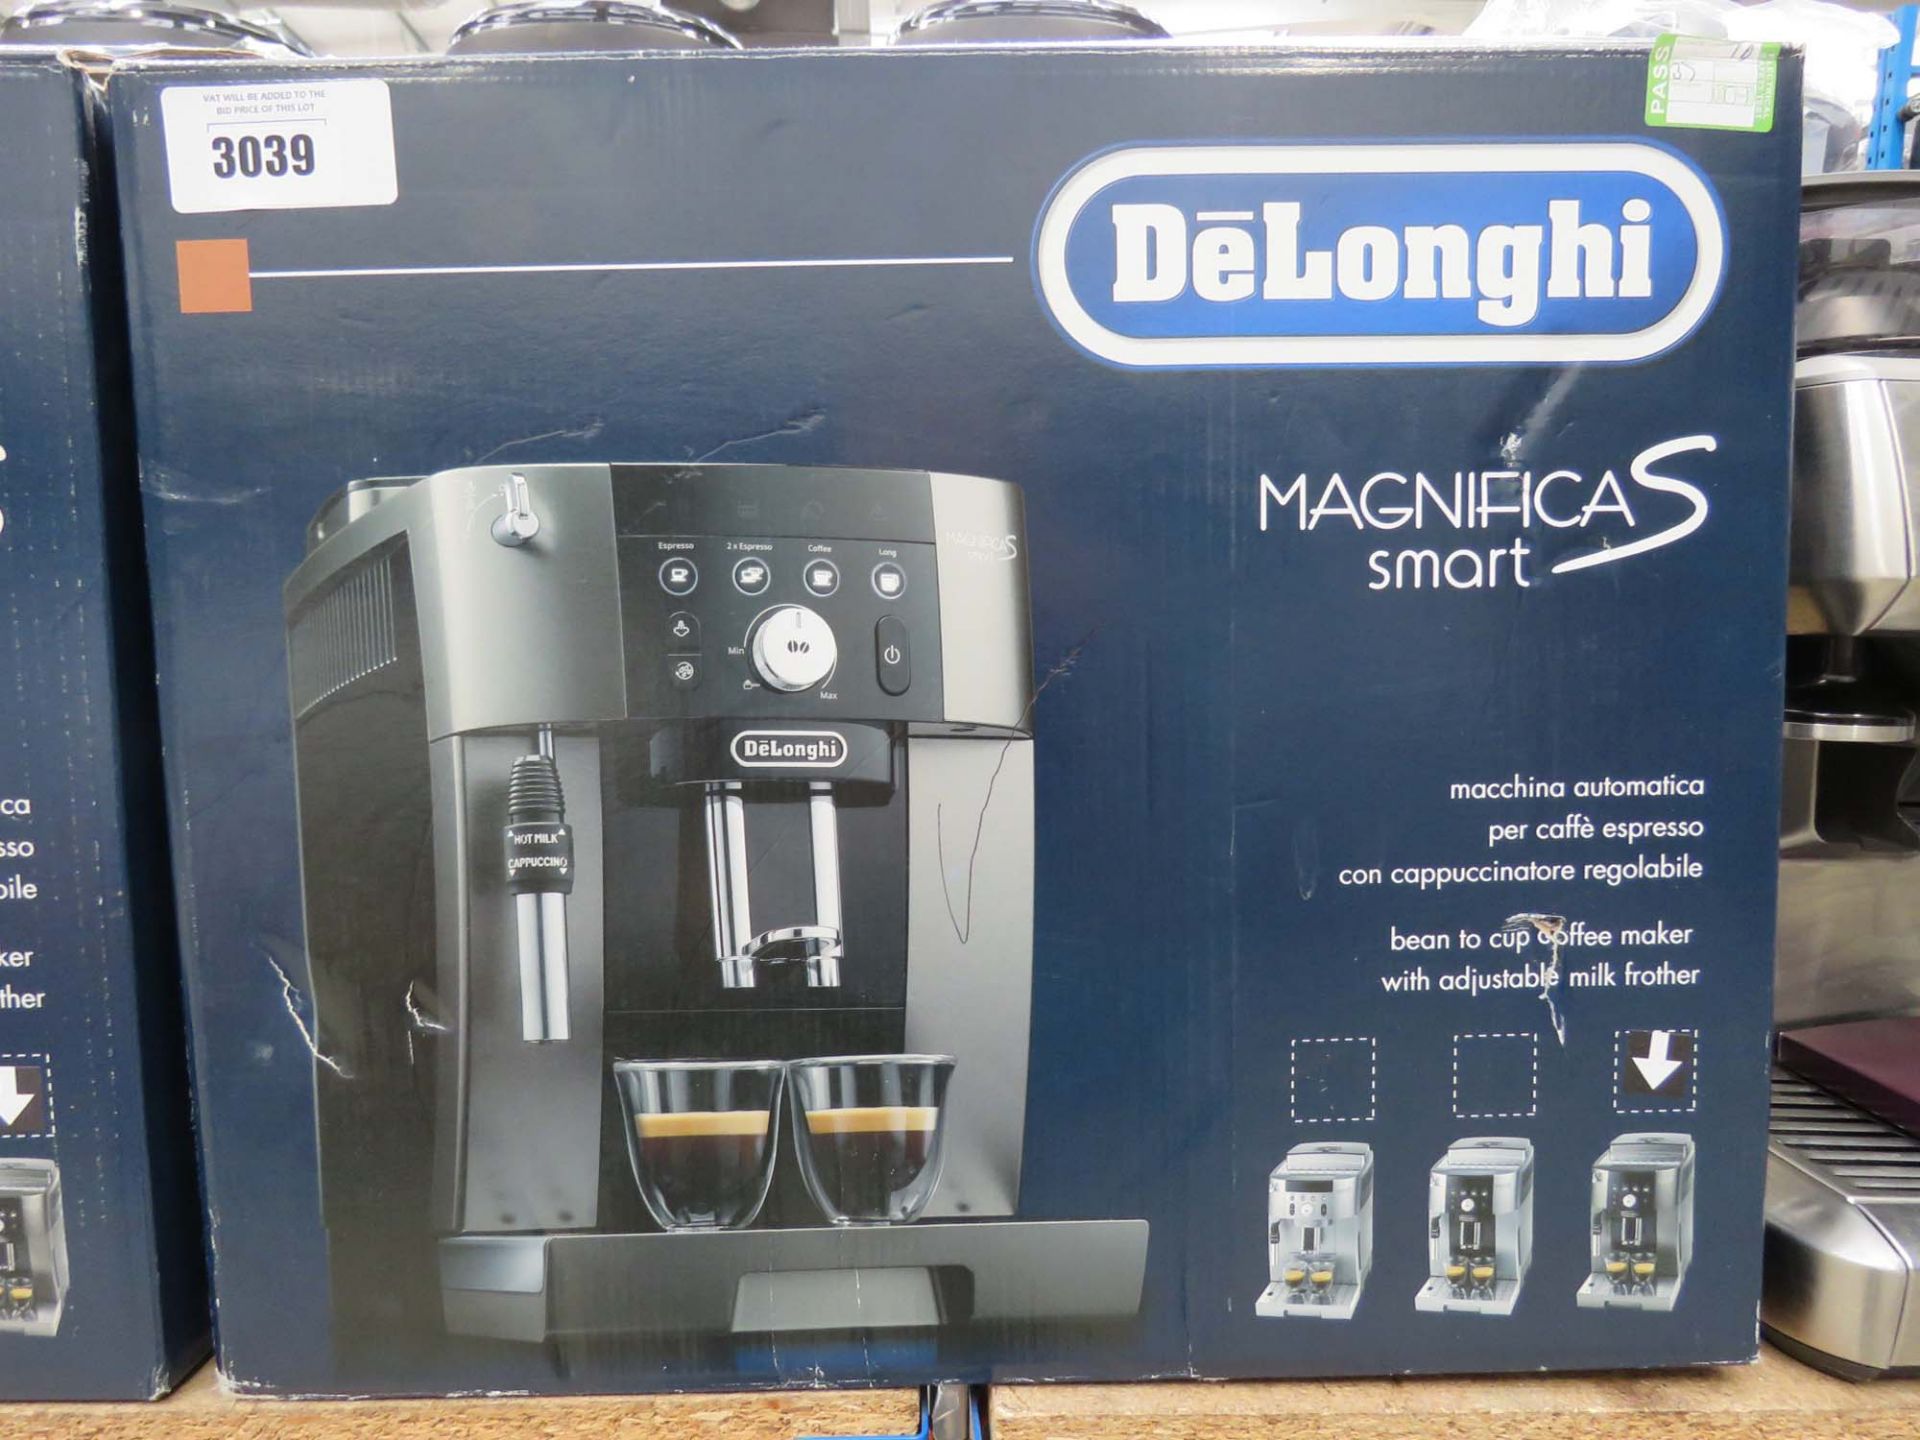 (10) Delonghi Magnifica S-Smart coffee machine